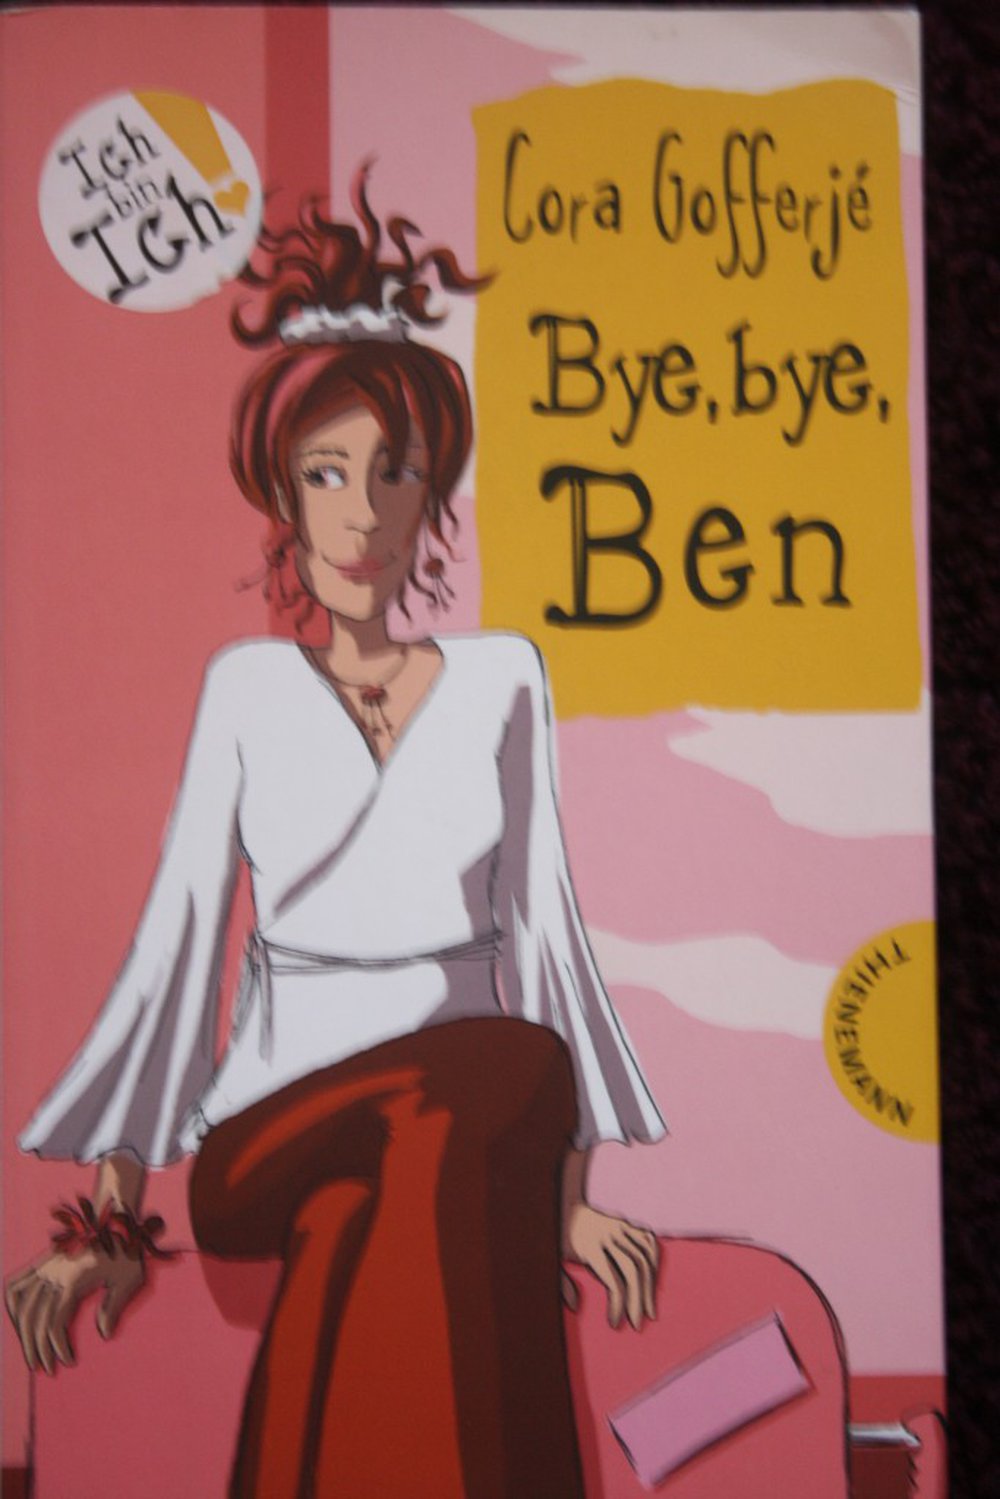 Bye, bye, Ben